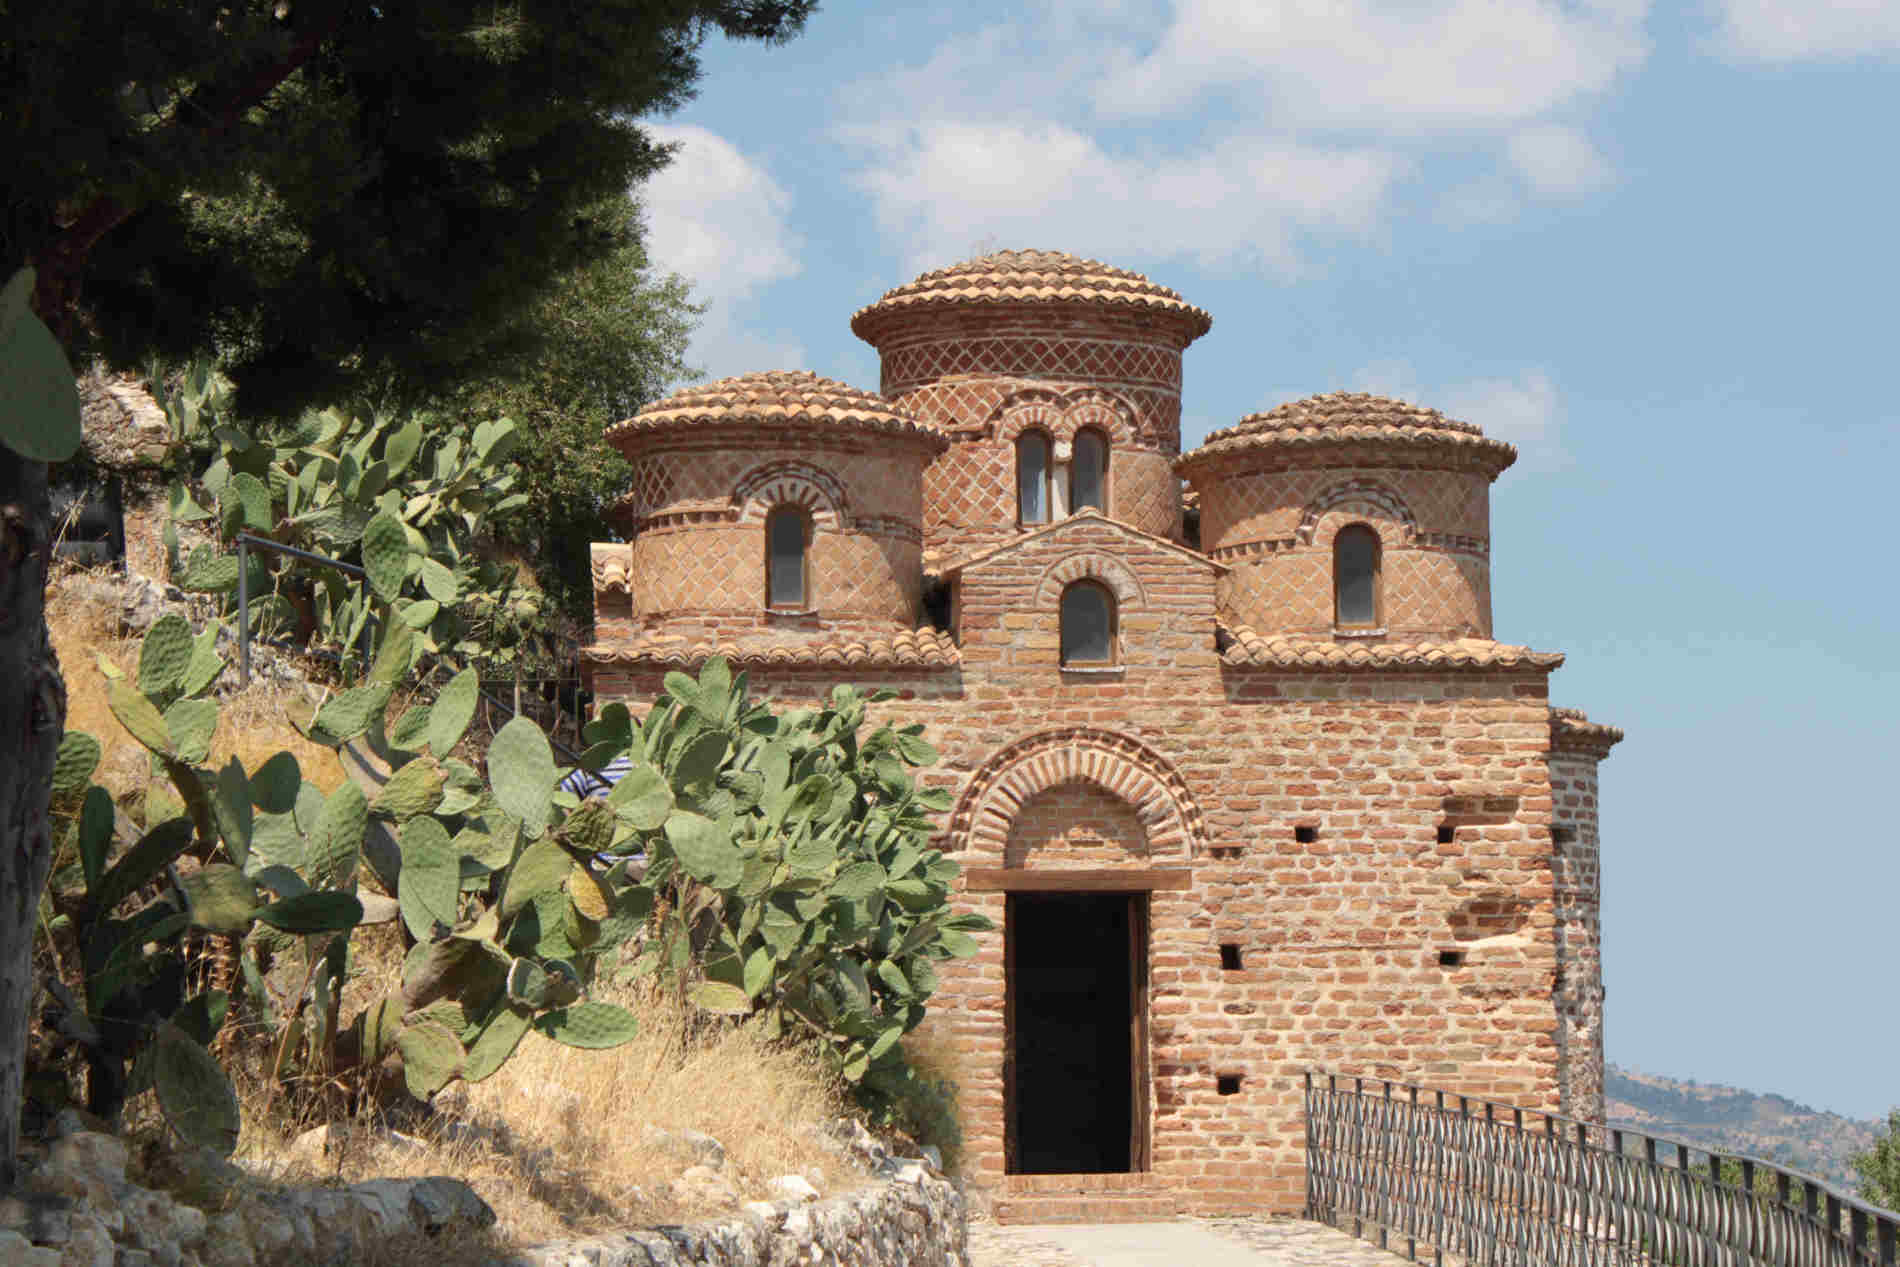 Borghi da visitare in Italia Stilo, in Calabria. La Cattolica di Stilo, chiesa bizantina è nella Tentative List UNESCO per l'Italia